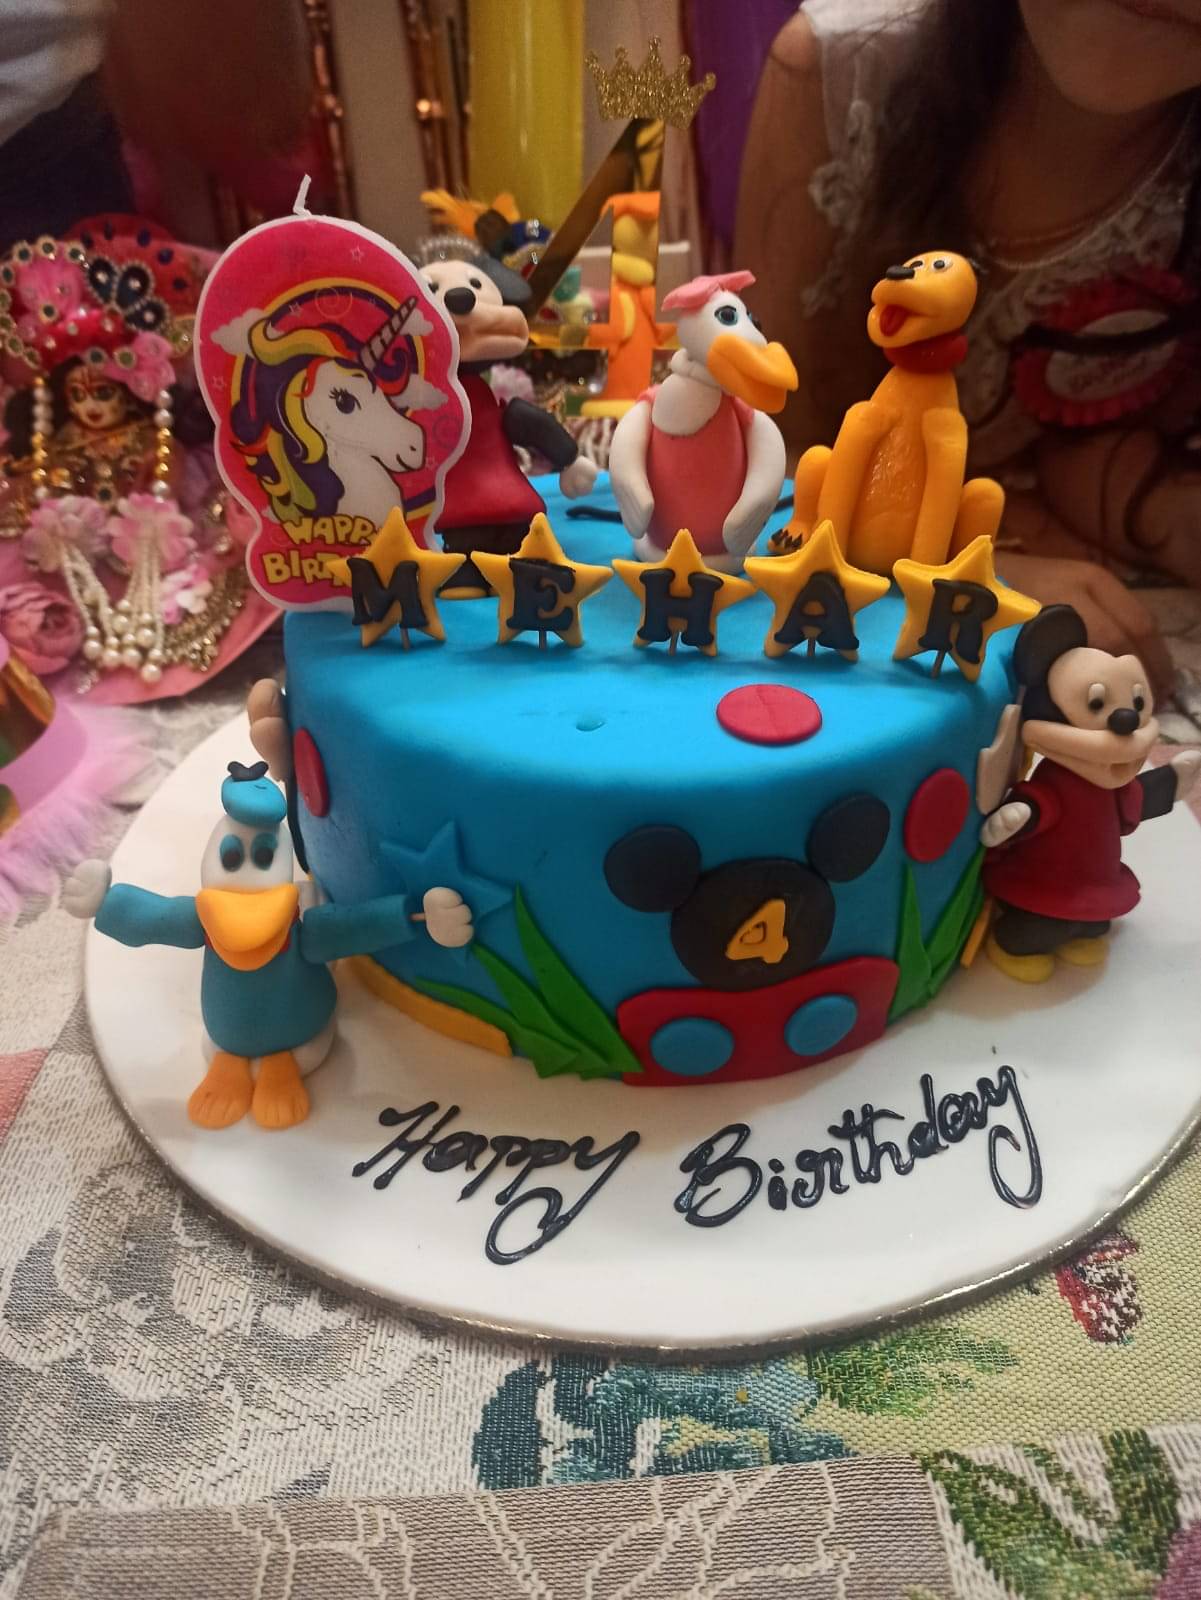 Disney Princess theme cake | TikTok